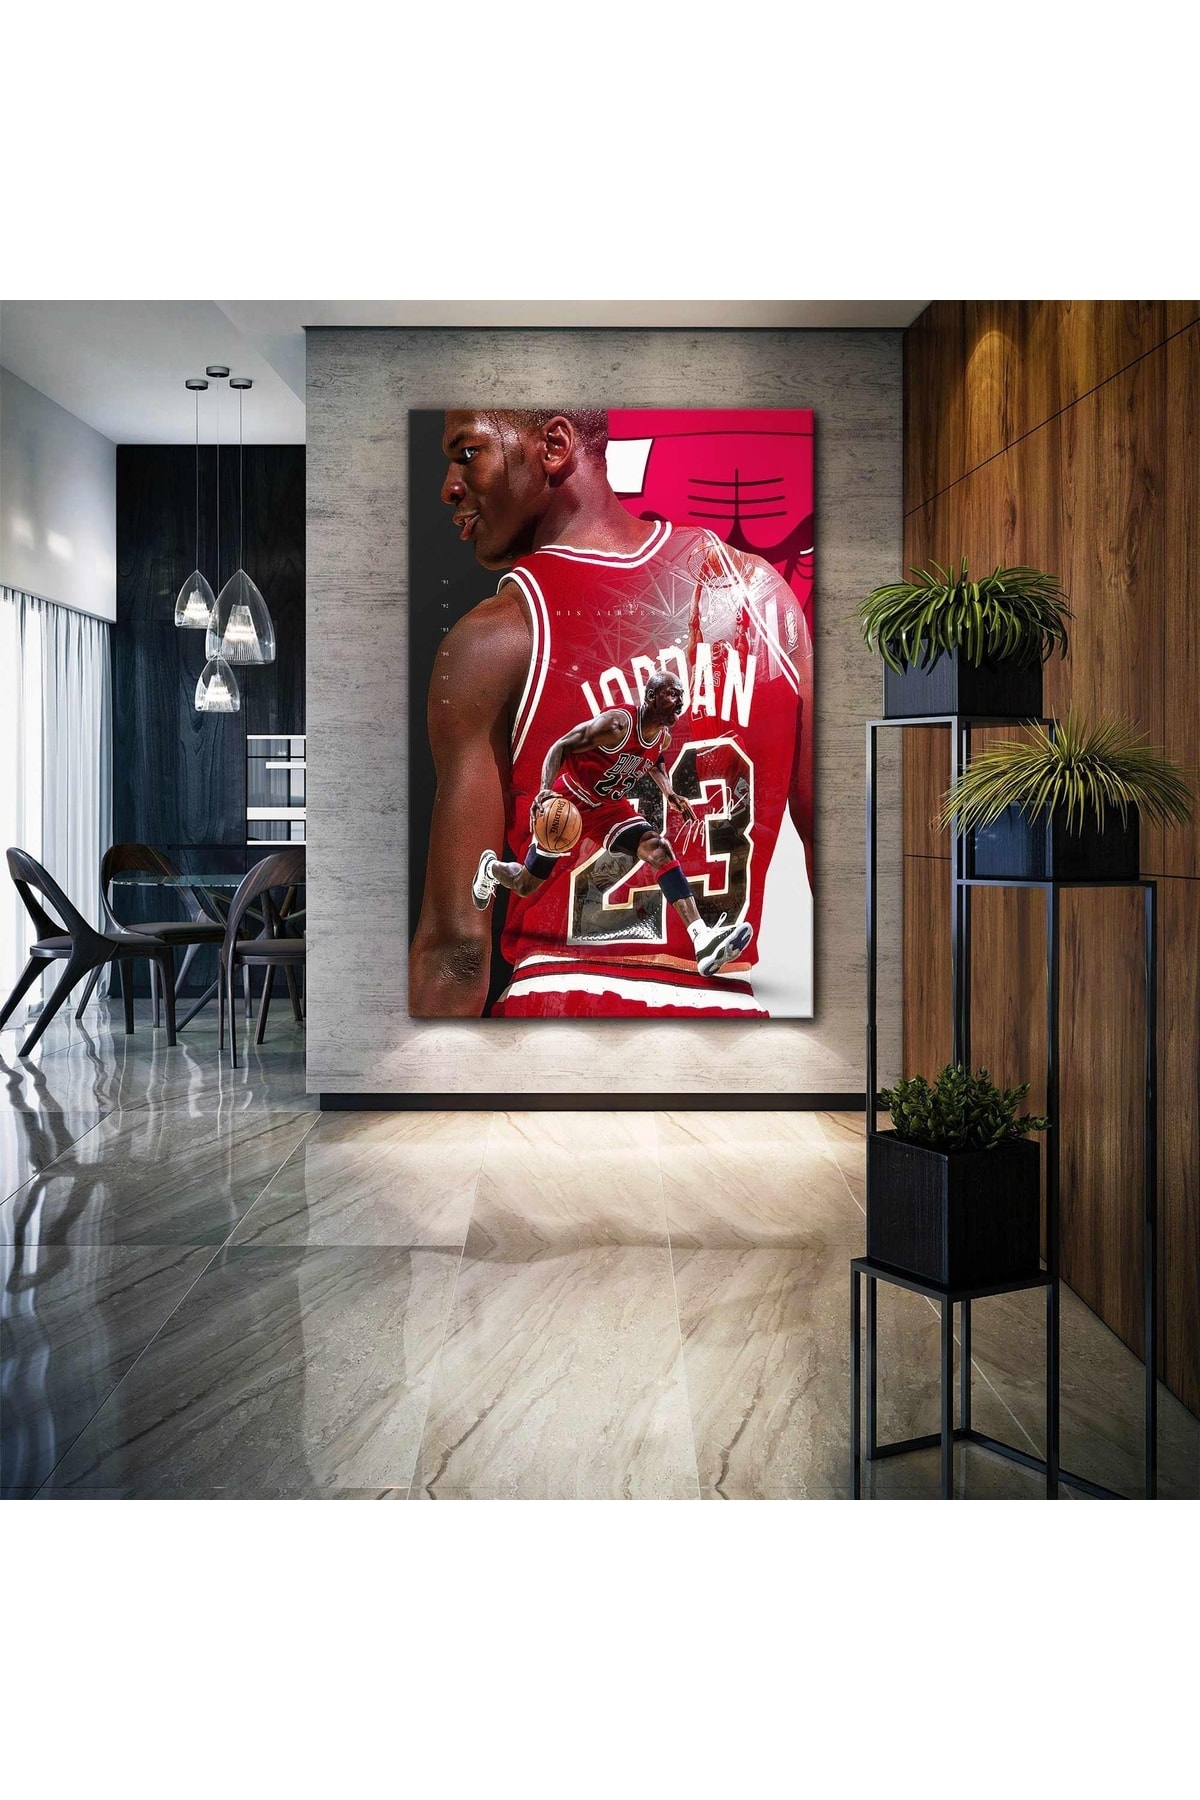 SML TABLO Michael Jordan Chicago Bulls Basketbol Nba 23 Numara Kırmızı Forma Kanvas Tablo